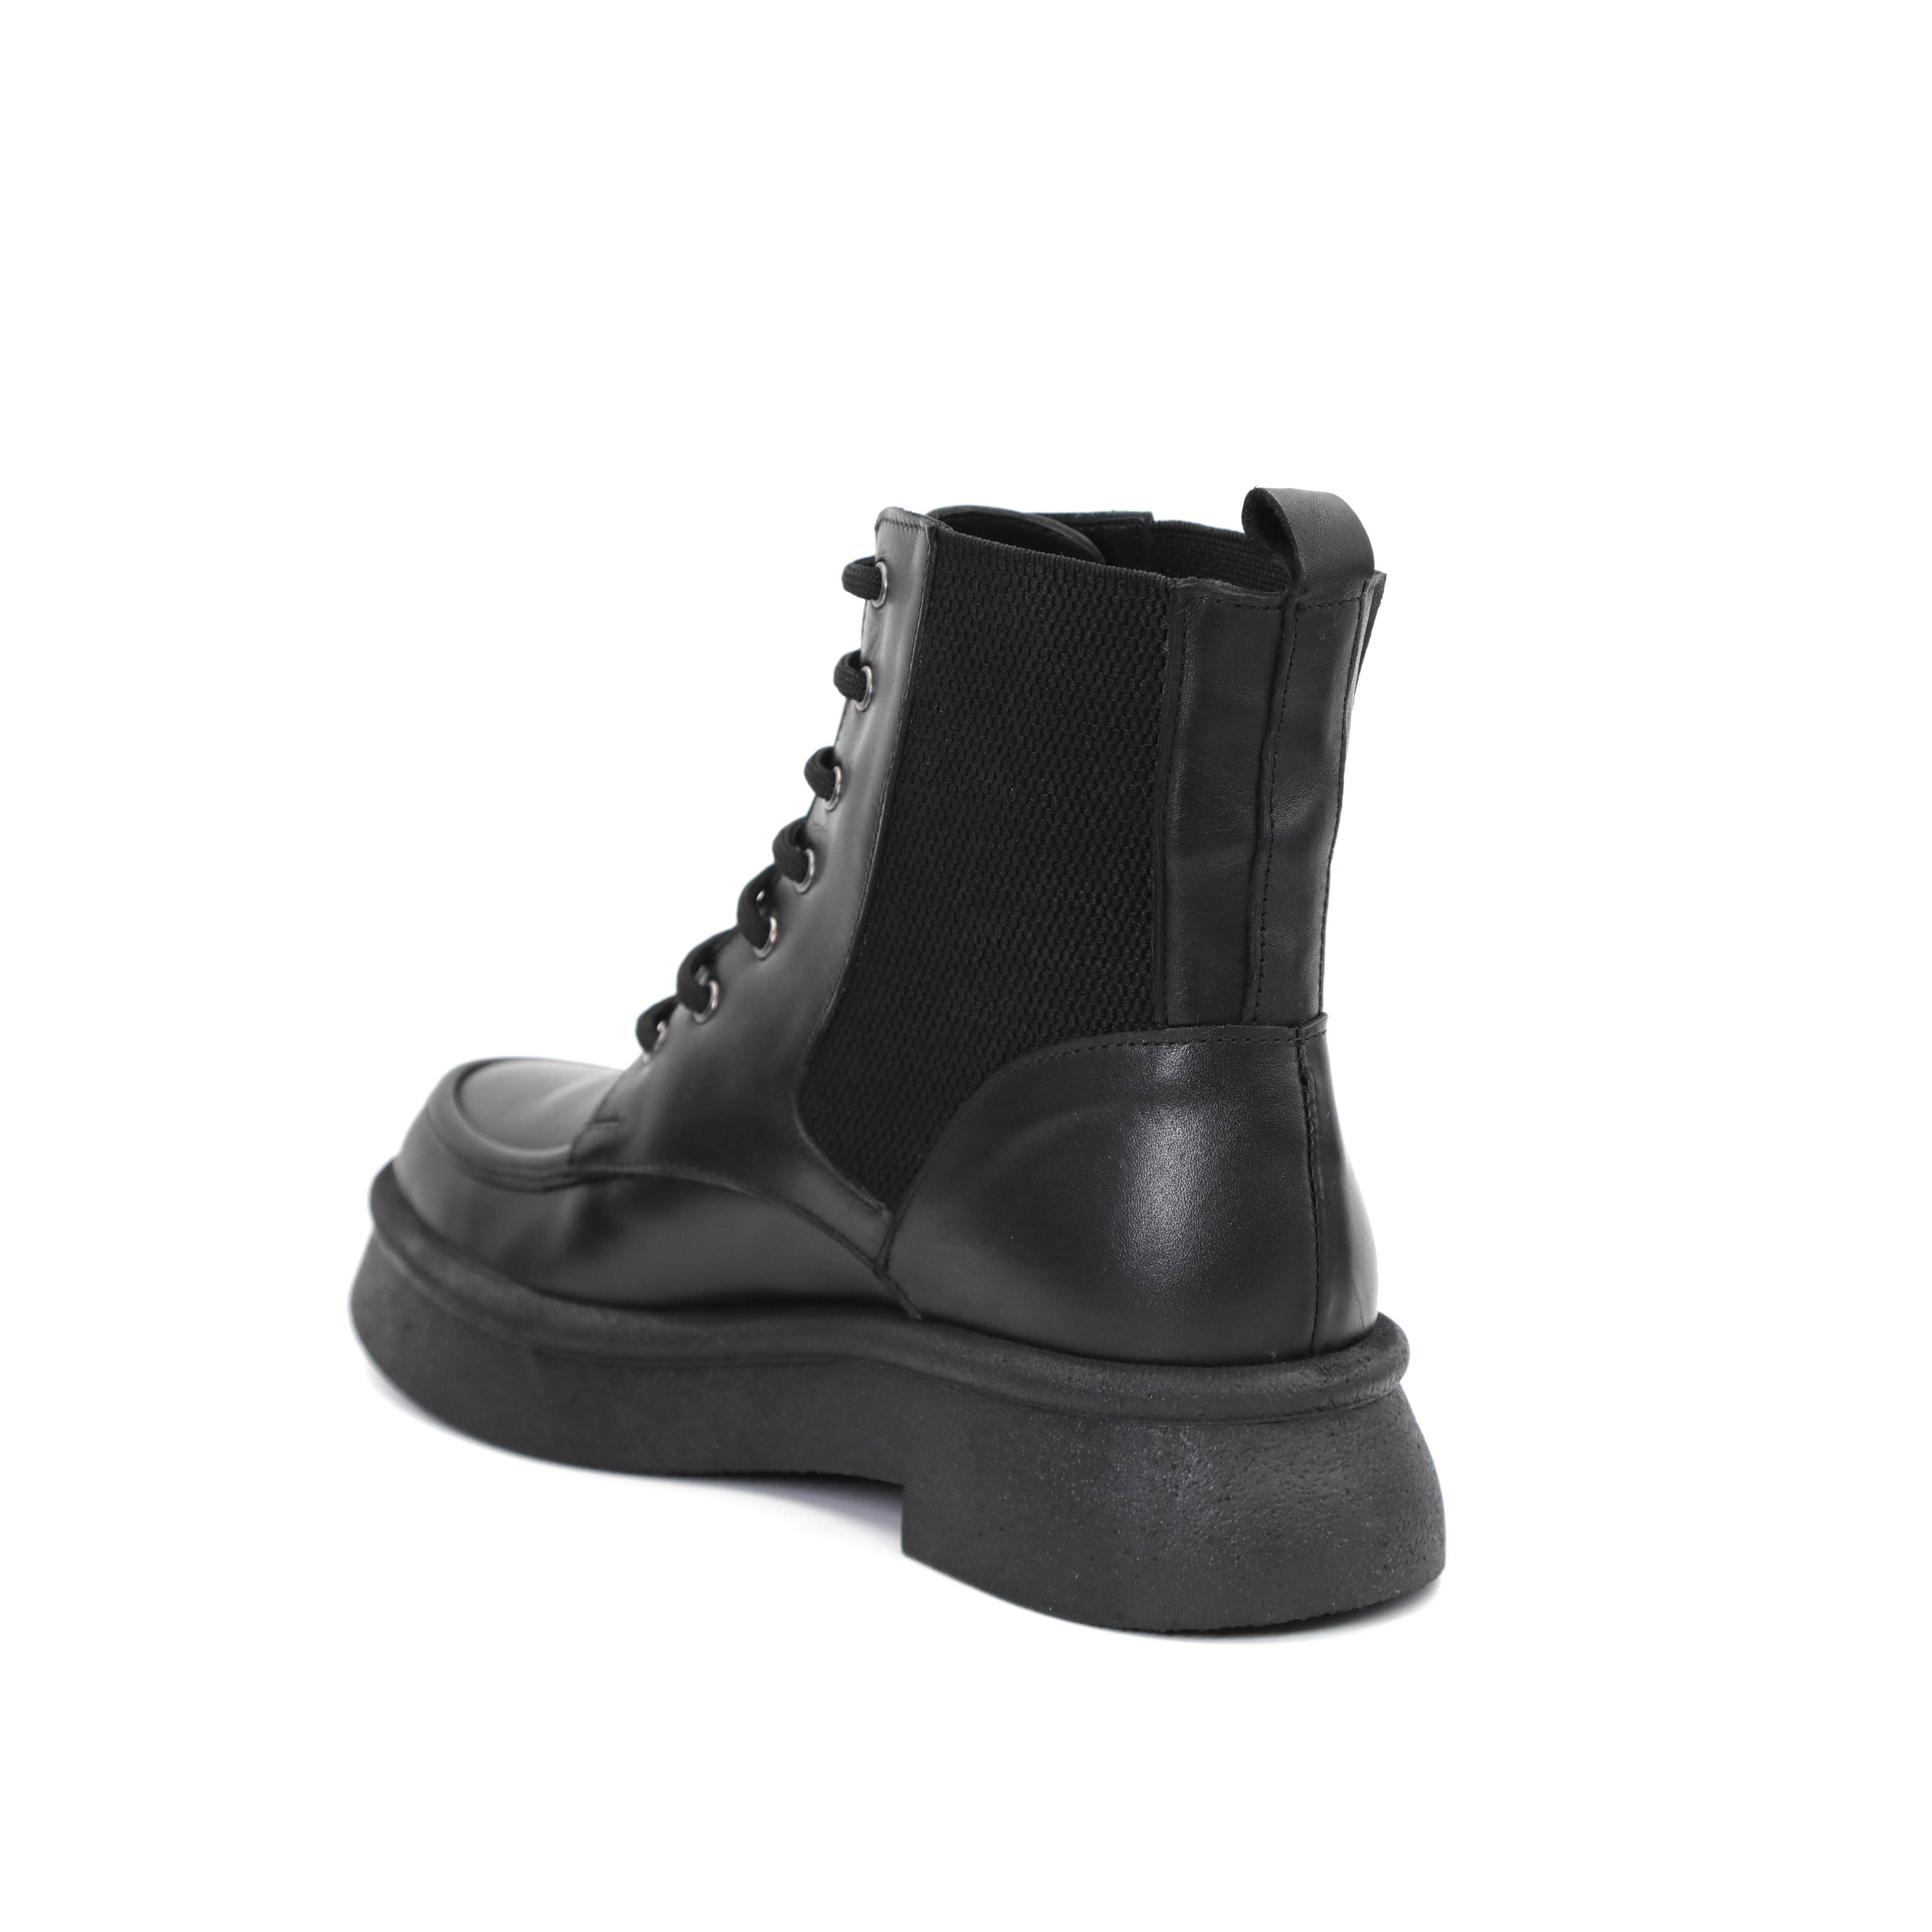 Женские высокие ботинки Clarks, черные, цвет черный, размер 41 - фото 3